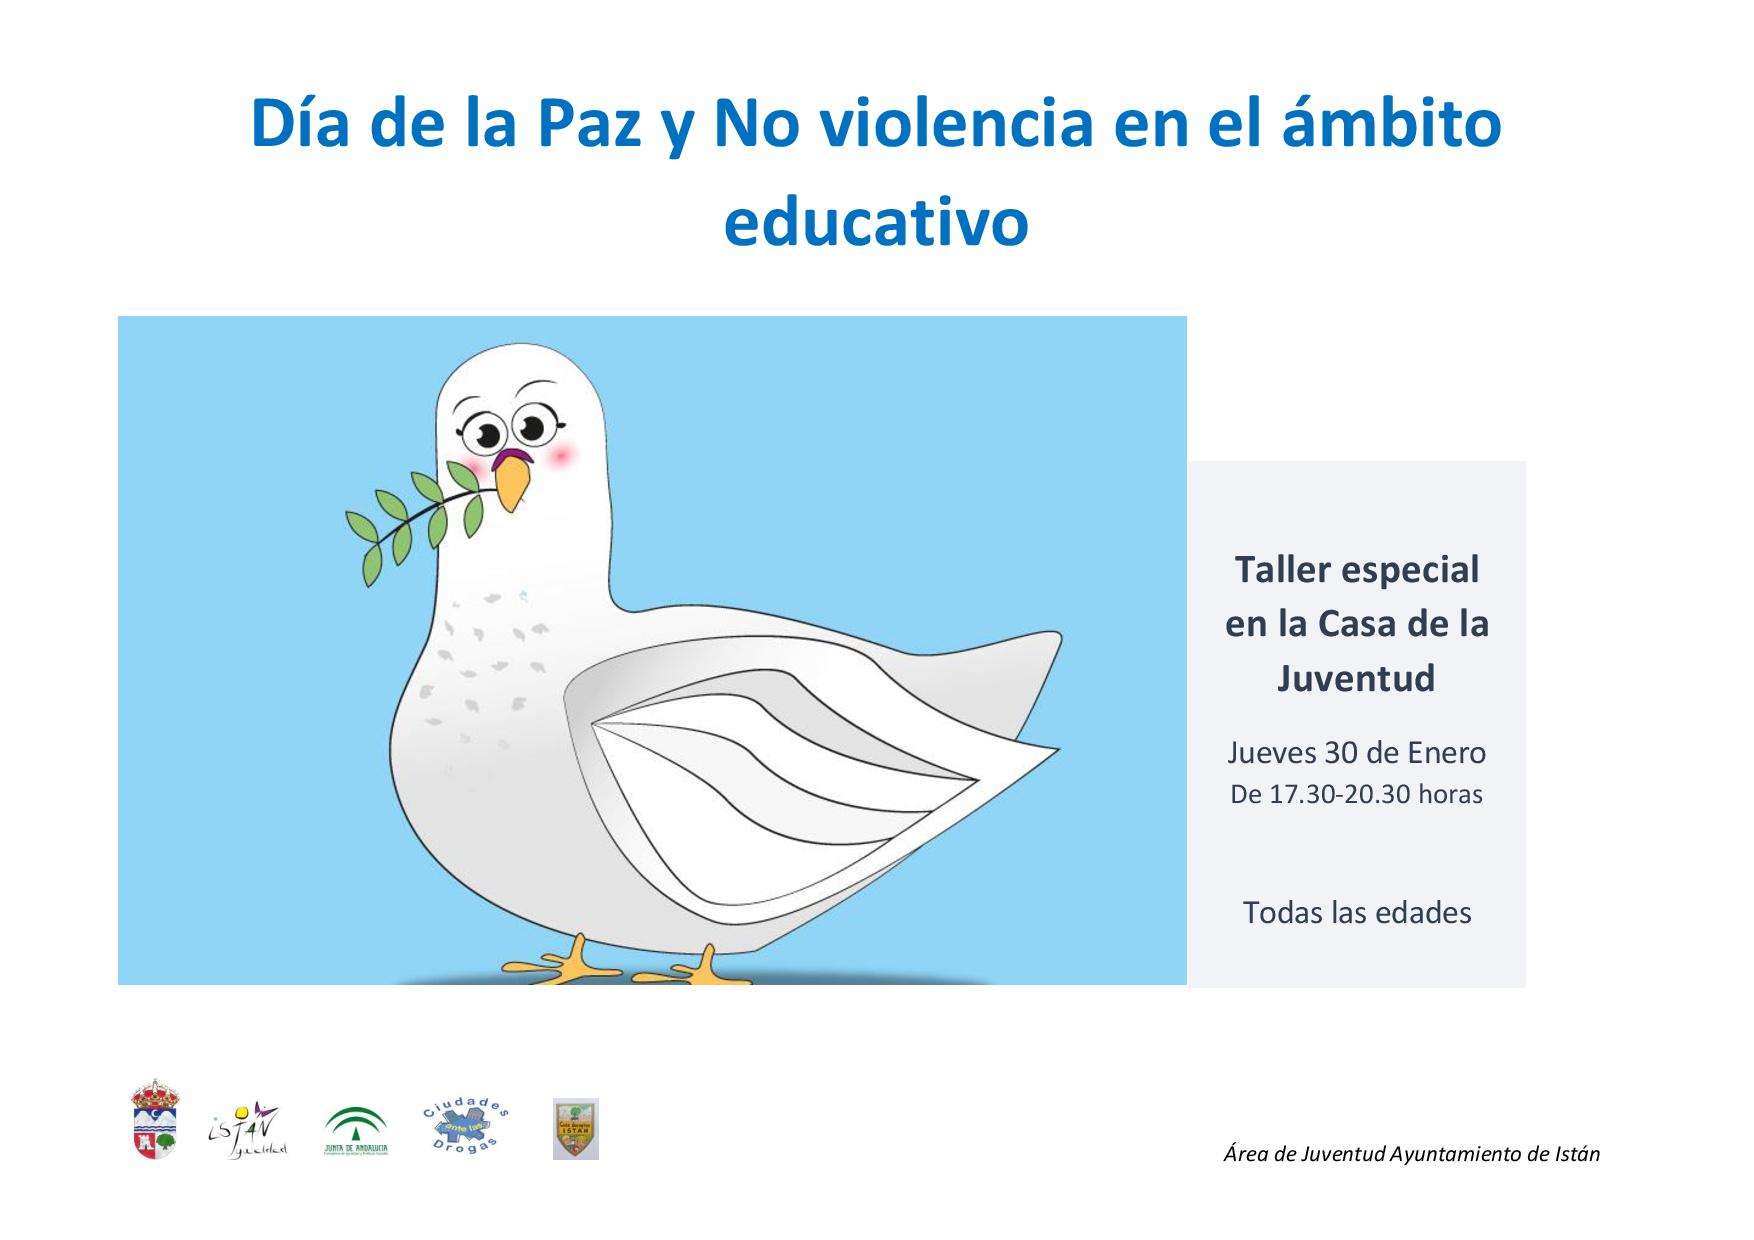 Taller del Día de la Paz y No violencia en el ámbito educativo 2020 - Istán (Málaga)